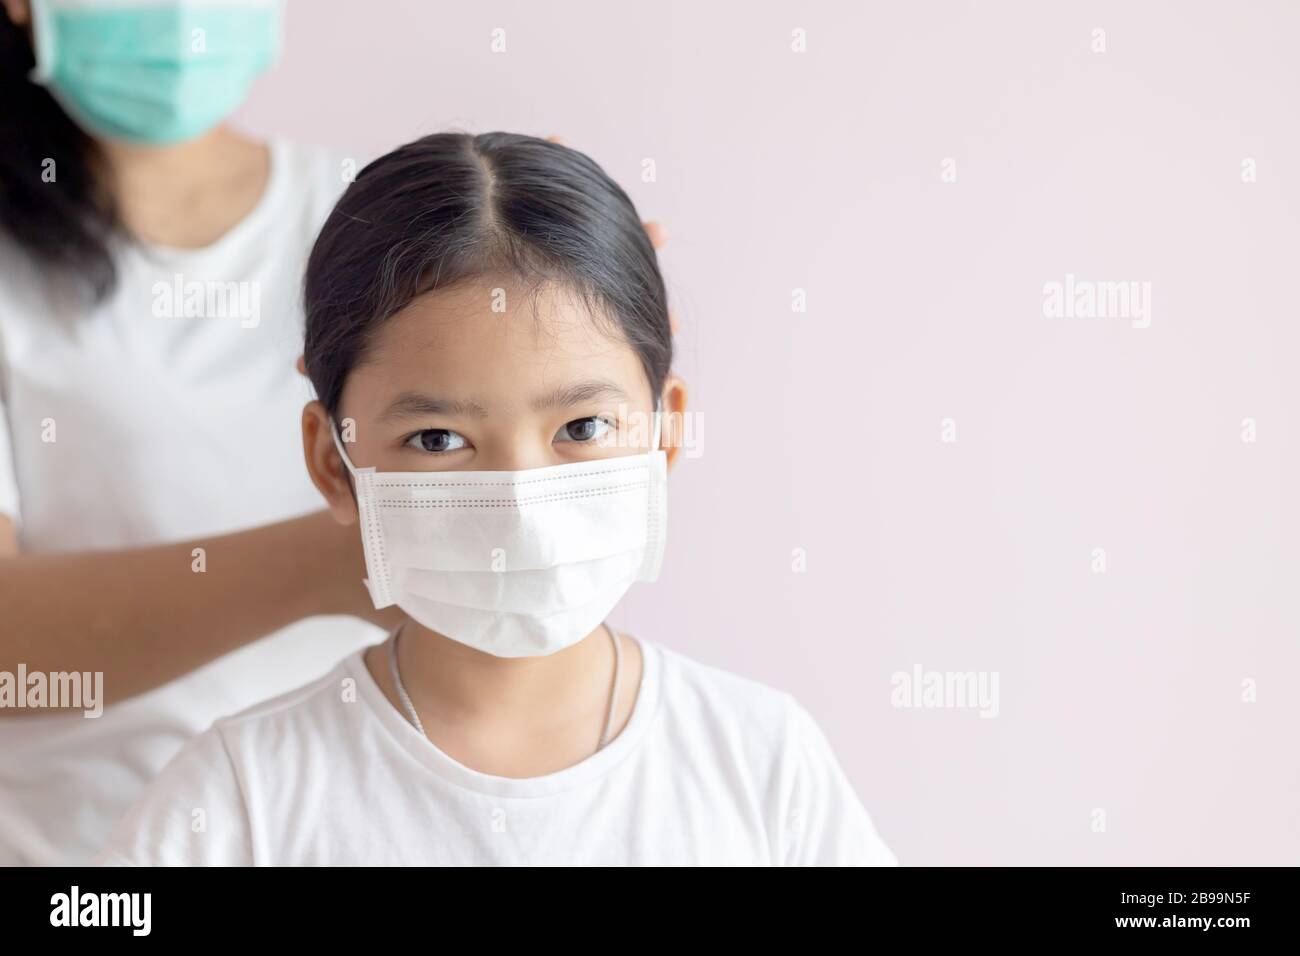 Asiatisches kleines Mädchen, das eine medizinische Schutzmaske trägt. Prävention der Ausbreitung von Influenza, Coronavirus oder COVID-19 und Smog Krankheit. Mutter zärnte Haare Stockfoto